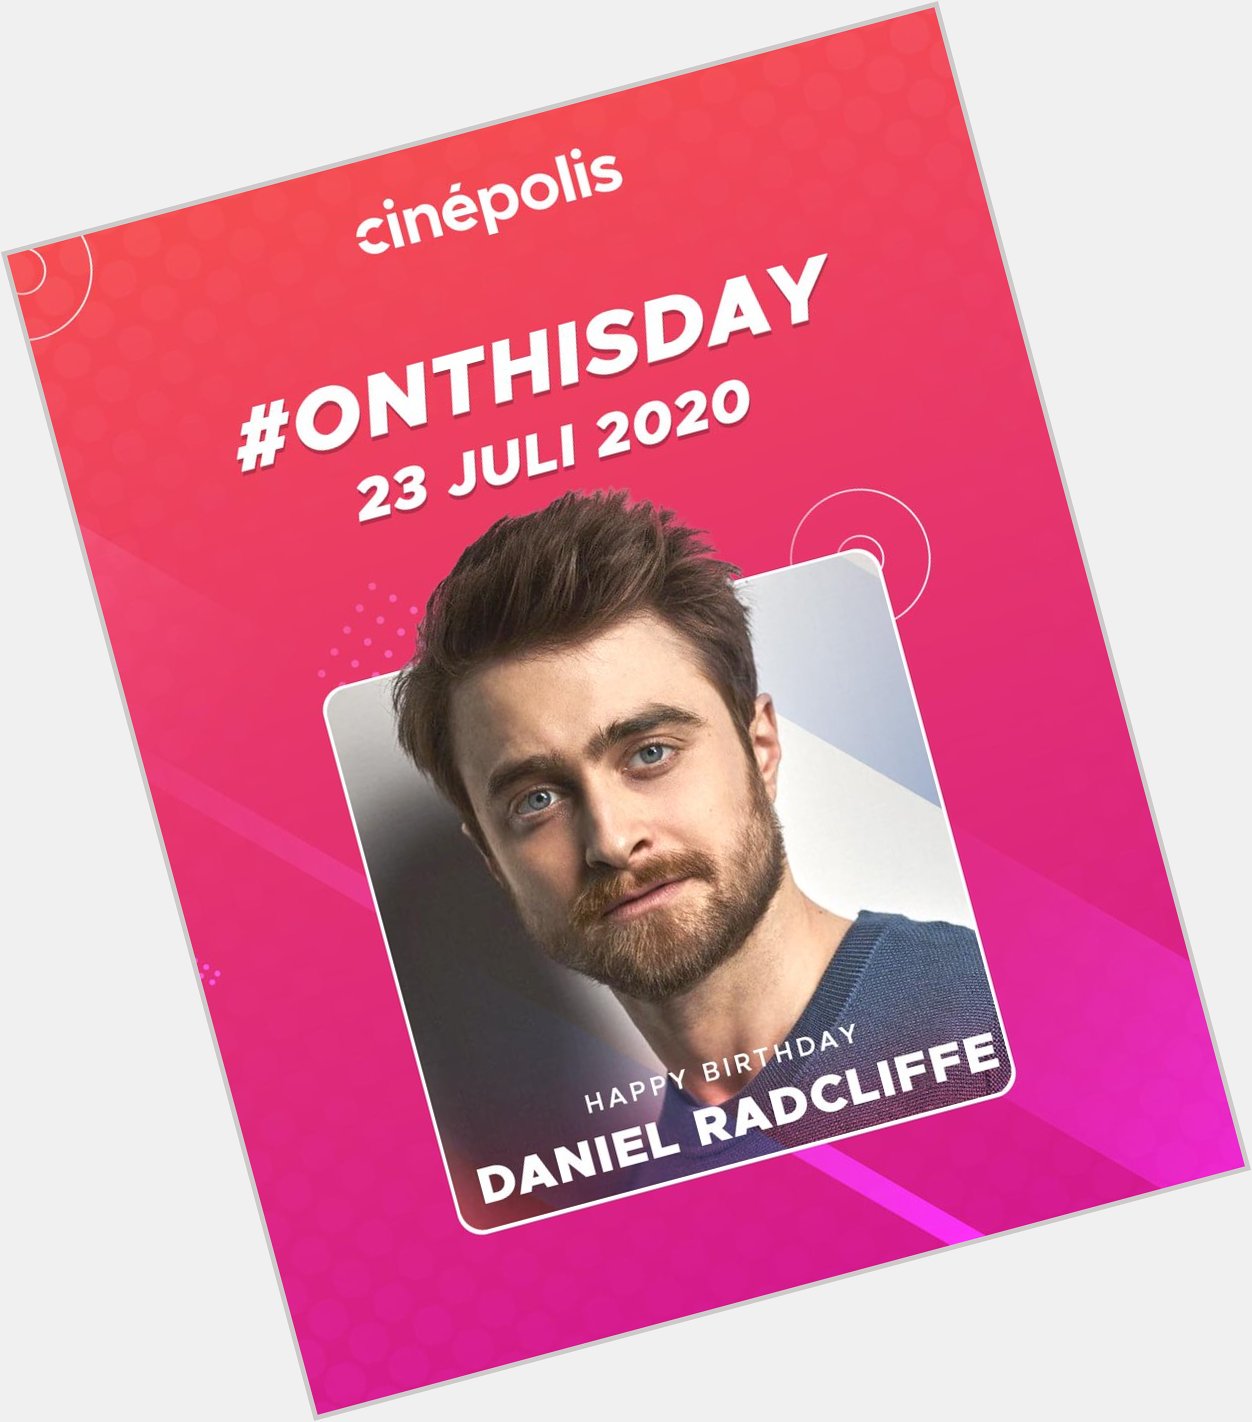 Happy birthday, Dan Radcliffe! Selain perannya di yang mana nih film Daniel Radcliffe favoritmu? 